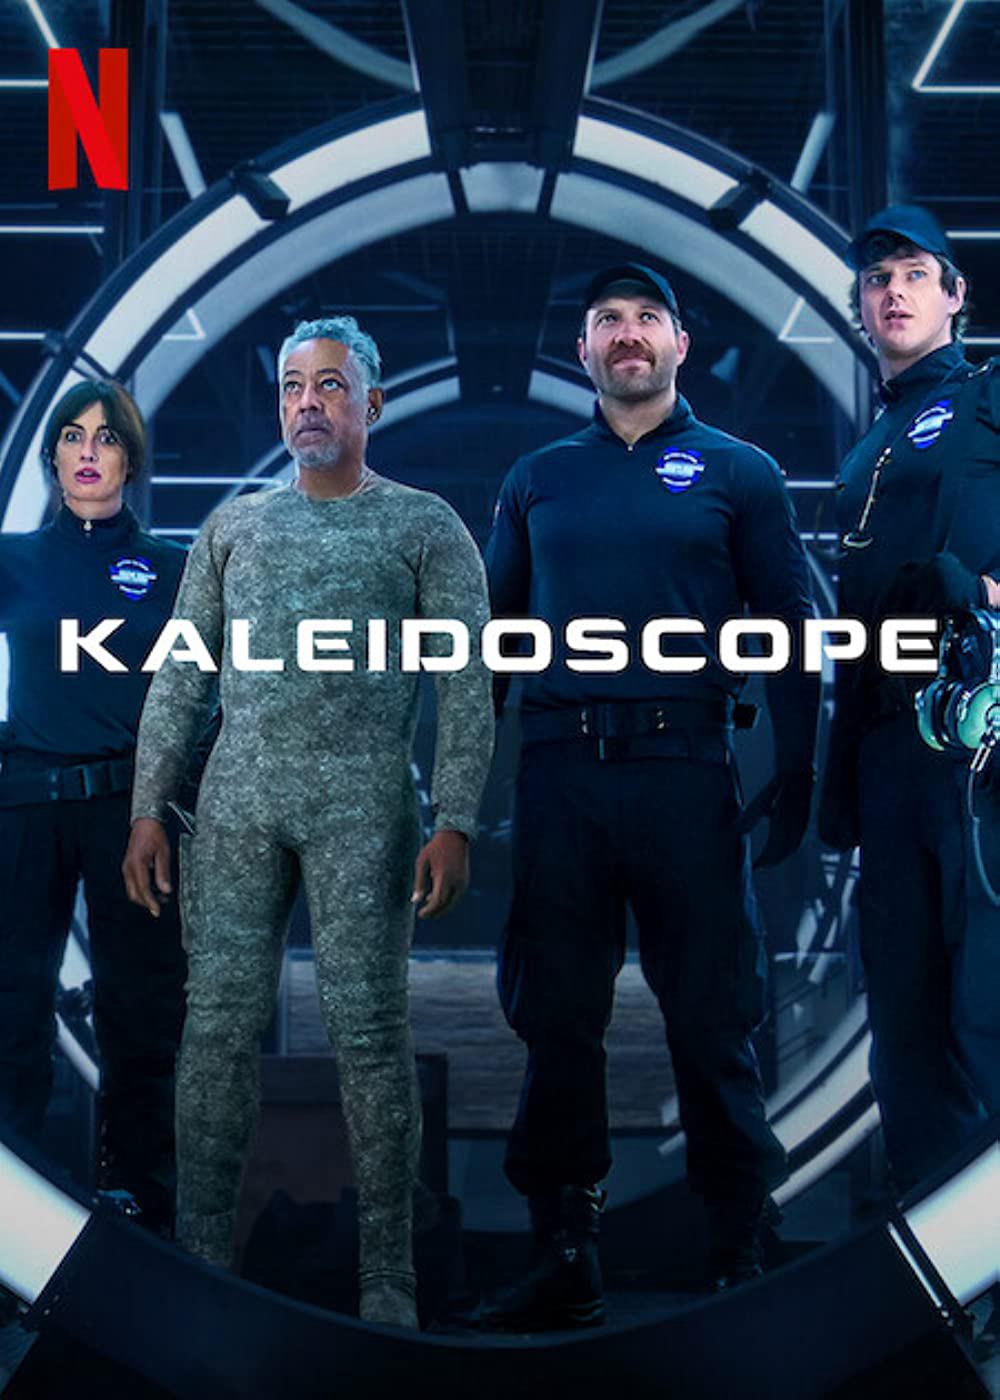 Kaleidoscope - Kaleidoscope